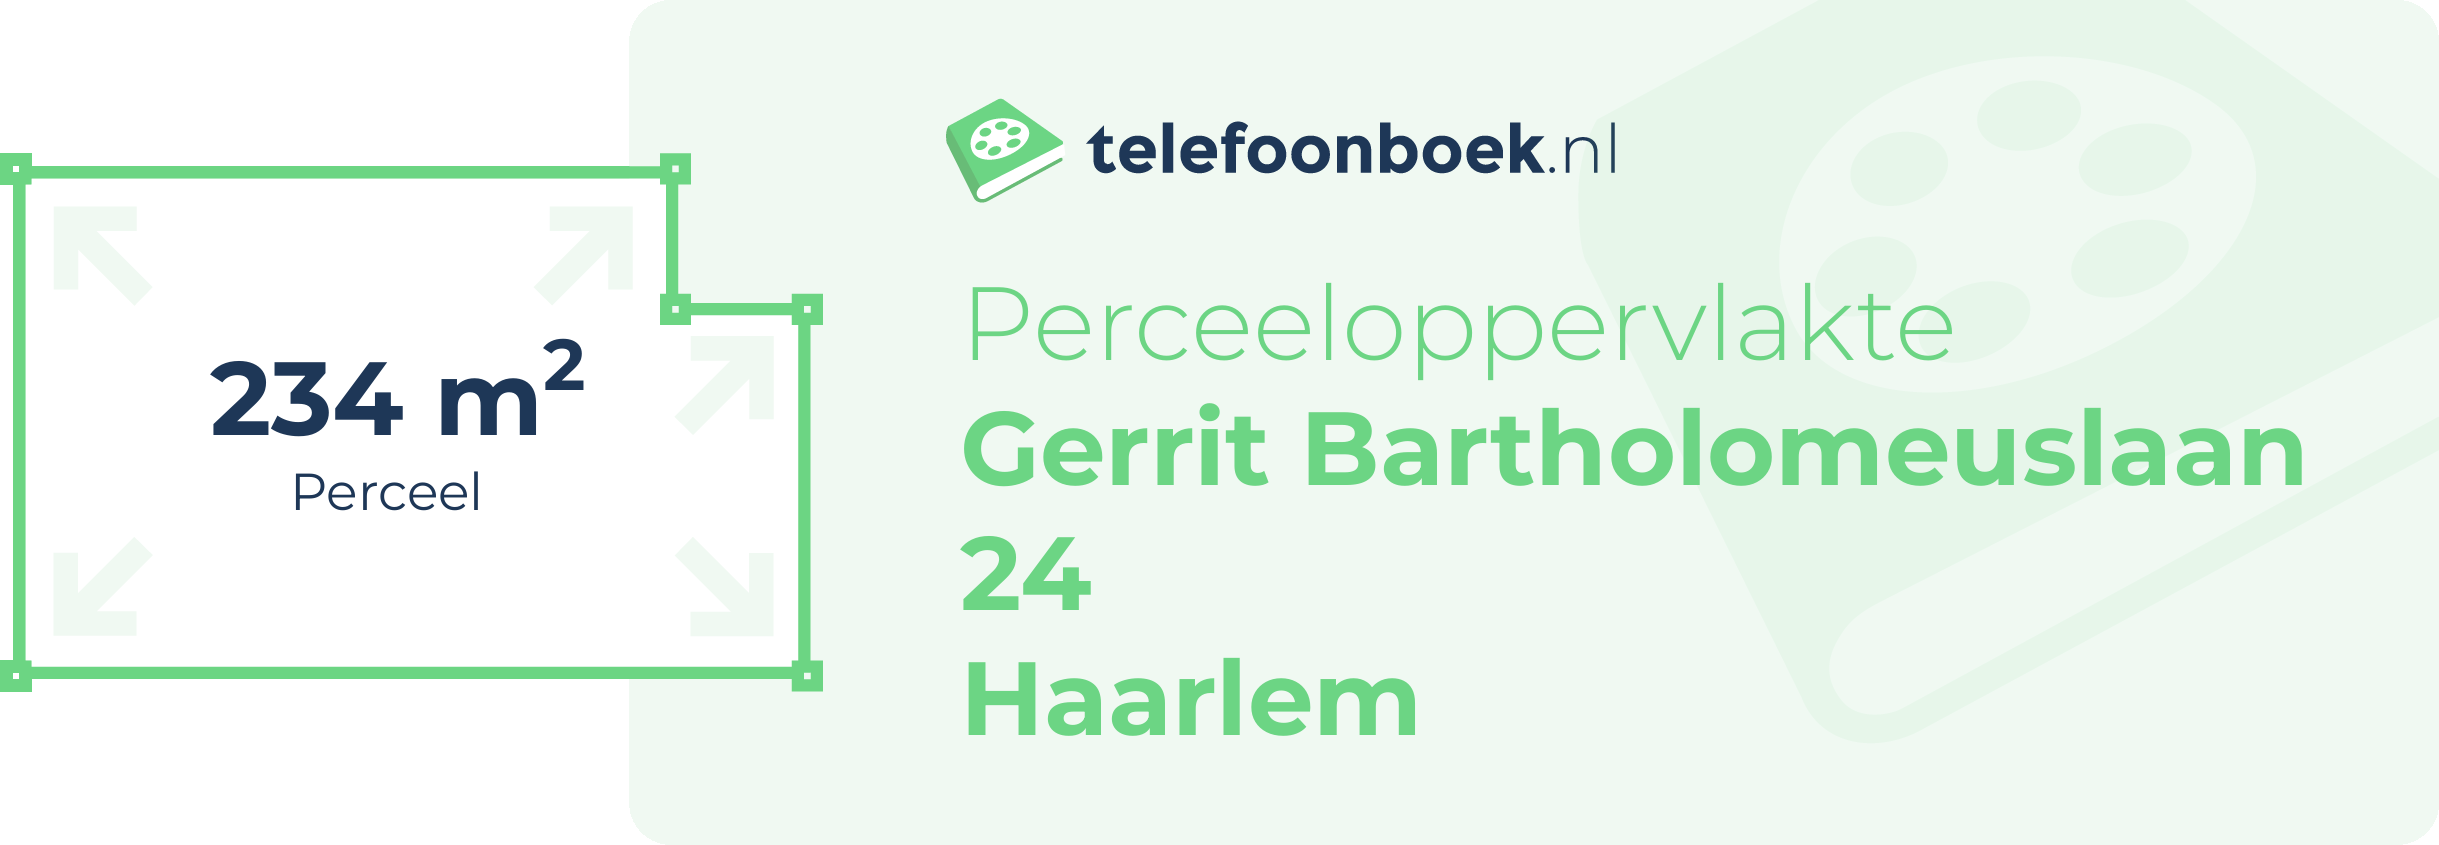 Perceeloppervlakte Gerrit Bartholomeuslaan 24 Haarlem